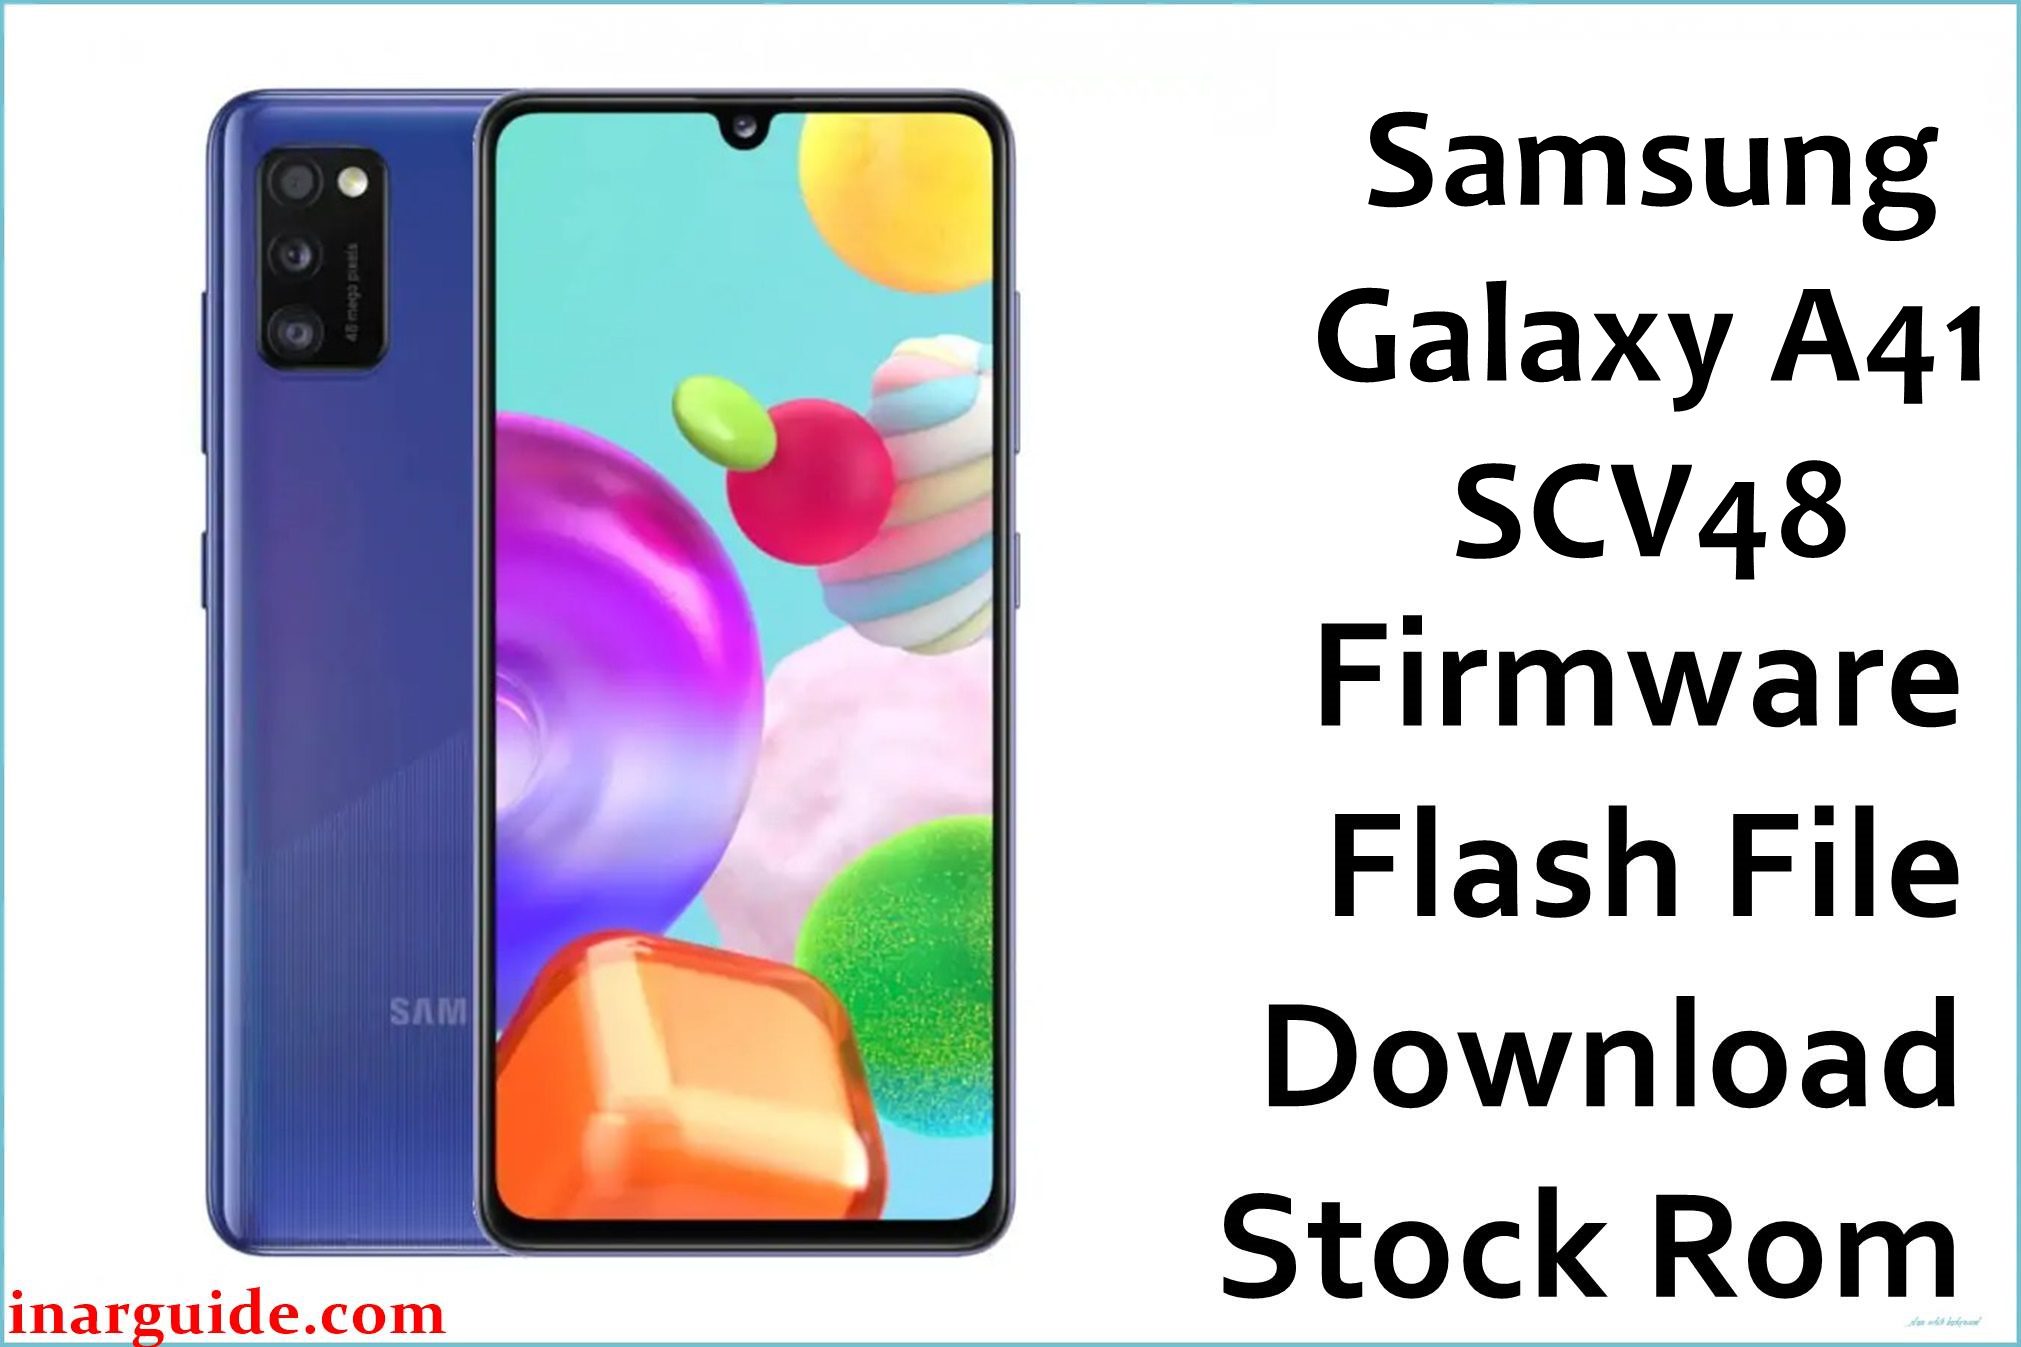 Samsung Galaxy A41 SCV48